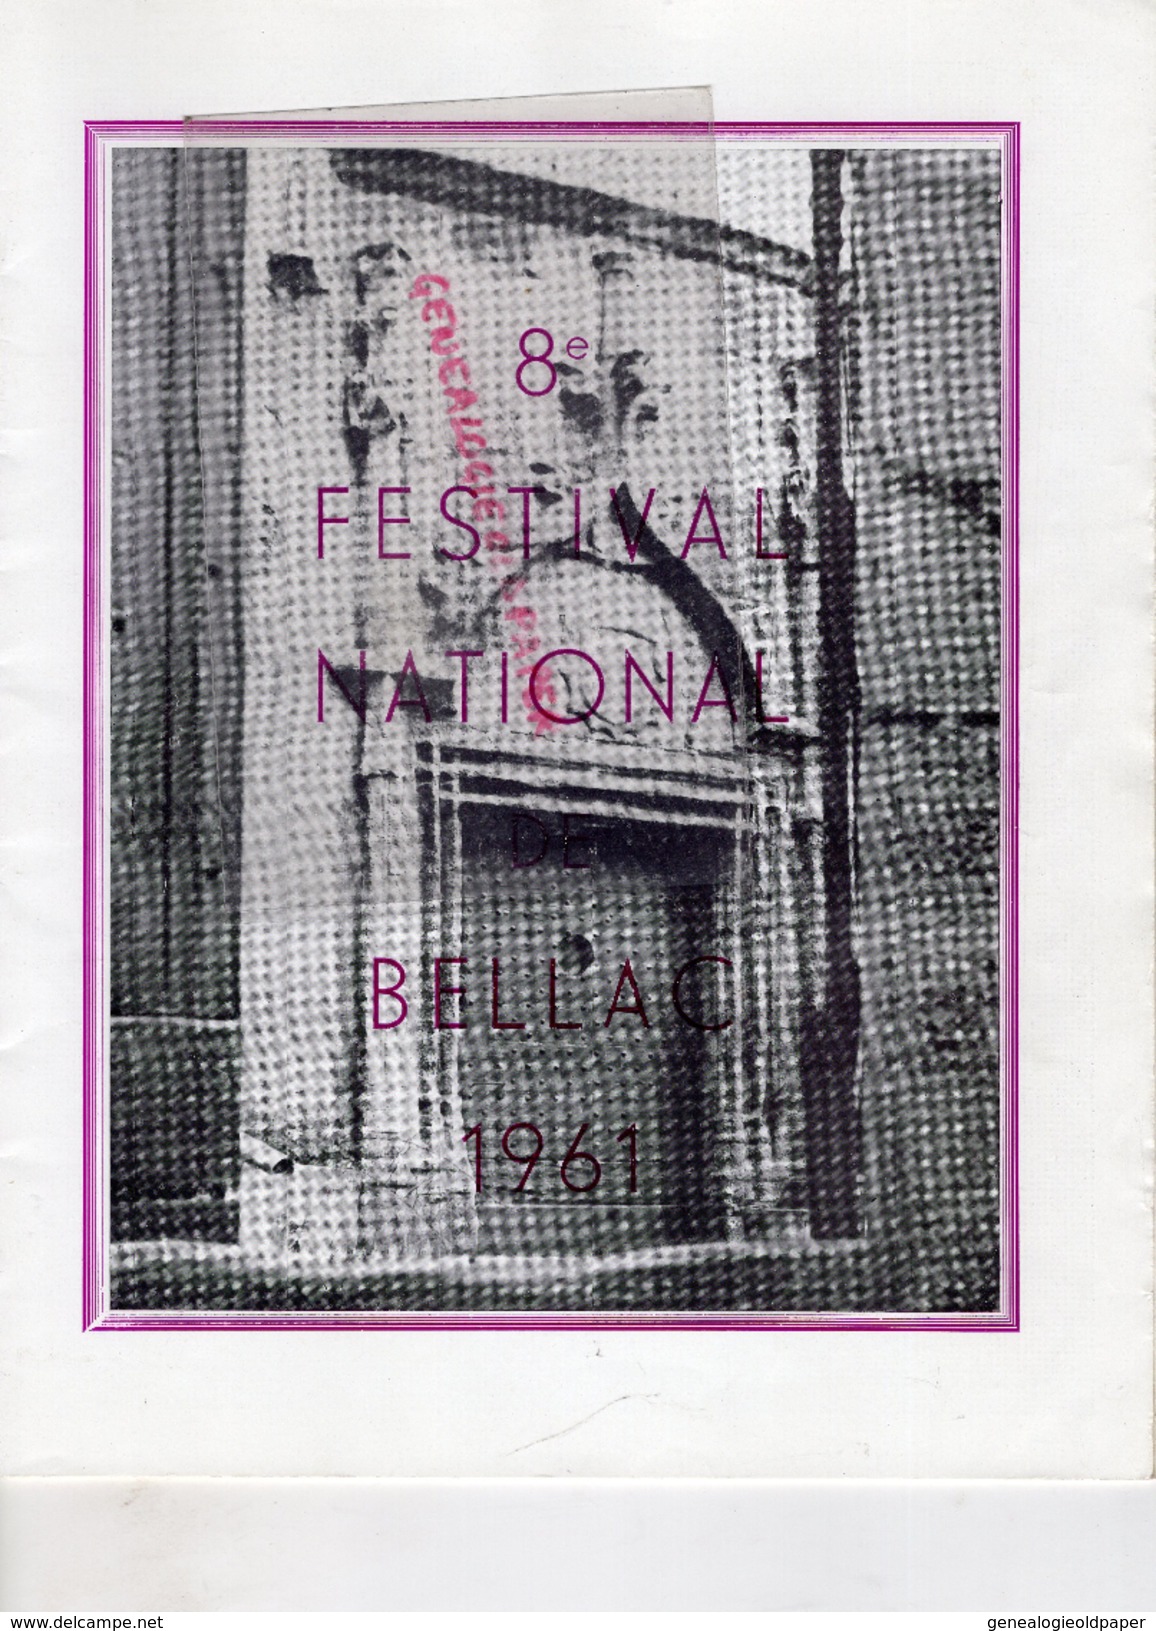 87 -BELLAC -PROGRAMME 8 E FESTIVAL 1961- PAUL KUENTZ-ANDROMAQUE-KNOCK-BARBIER SEVILLE-ANDRE CLUZEAU-LIMOGES ETCHEVERRY- - Programas